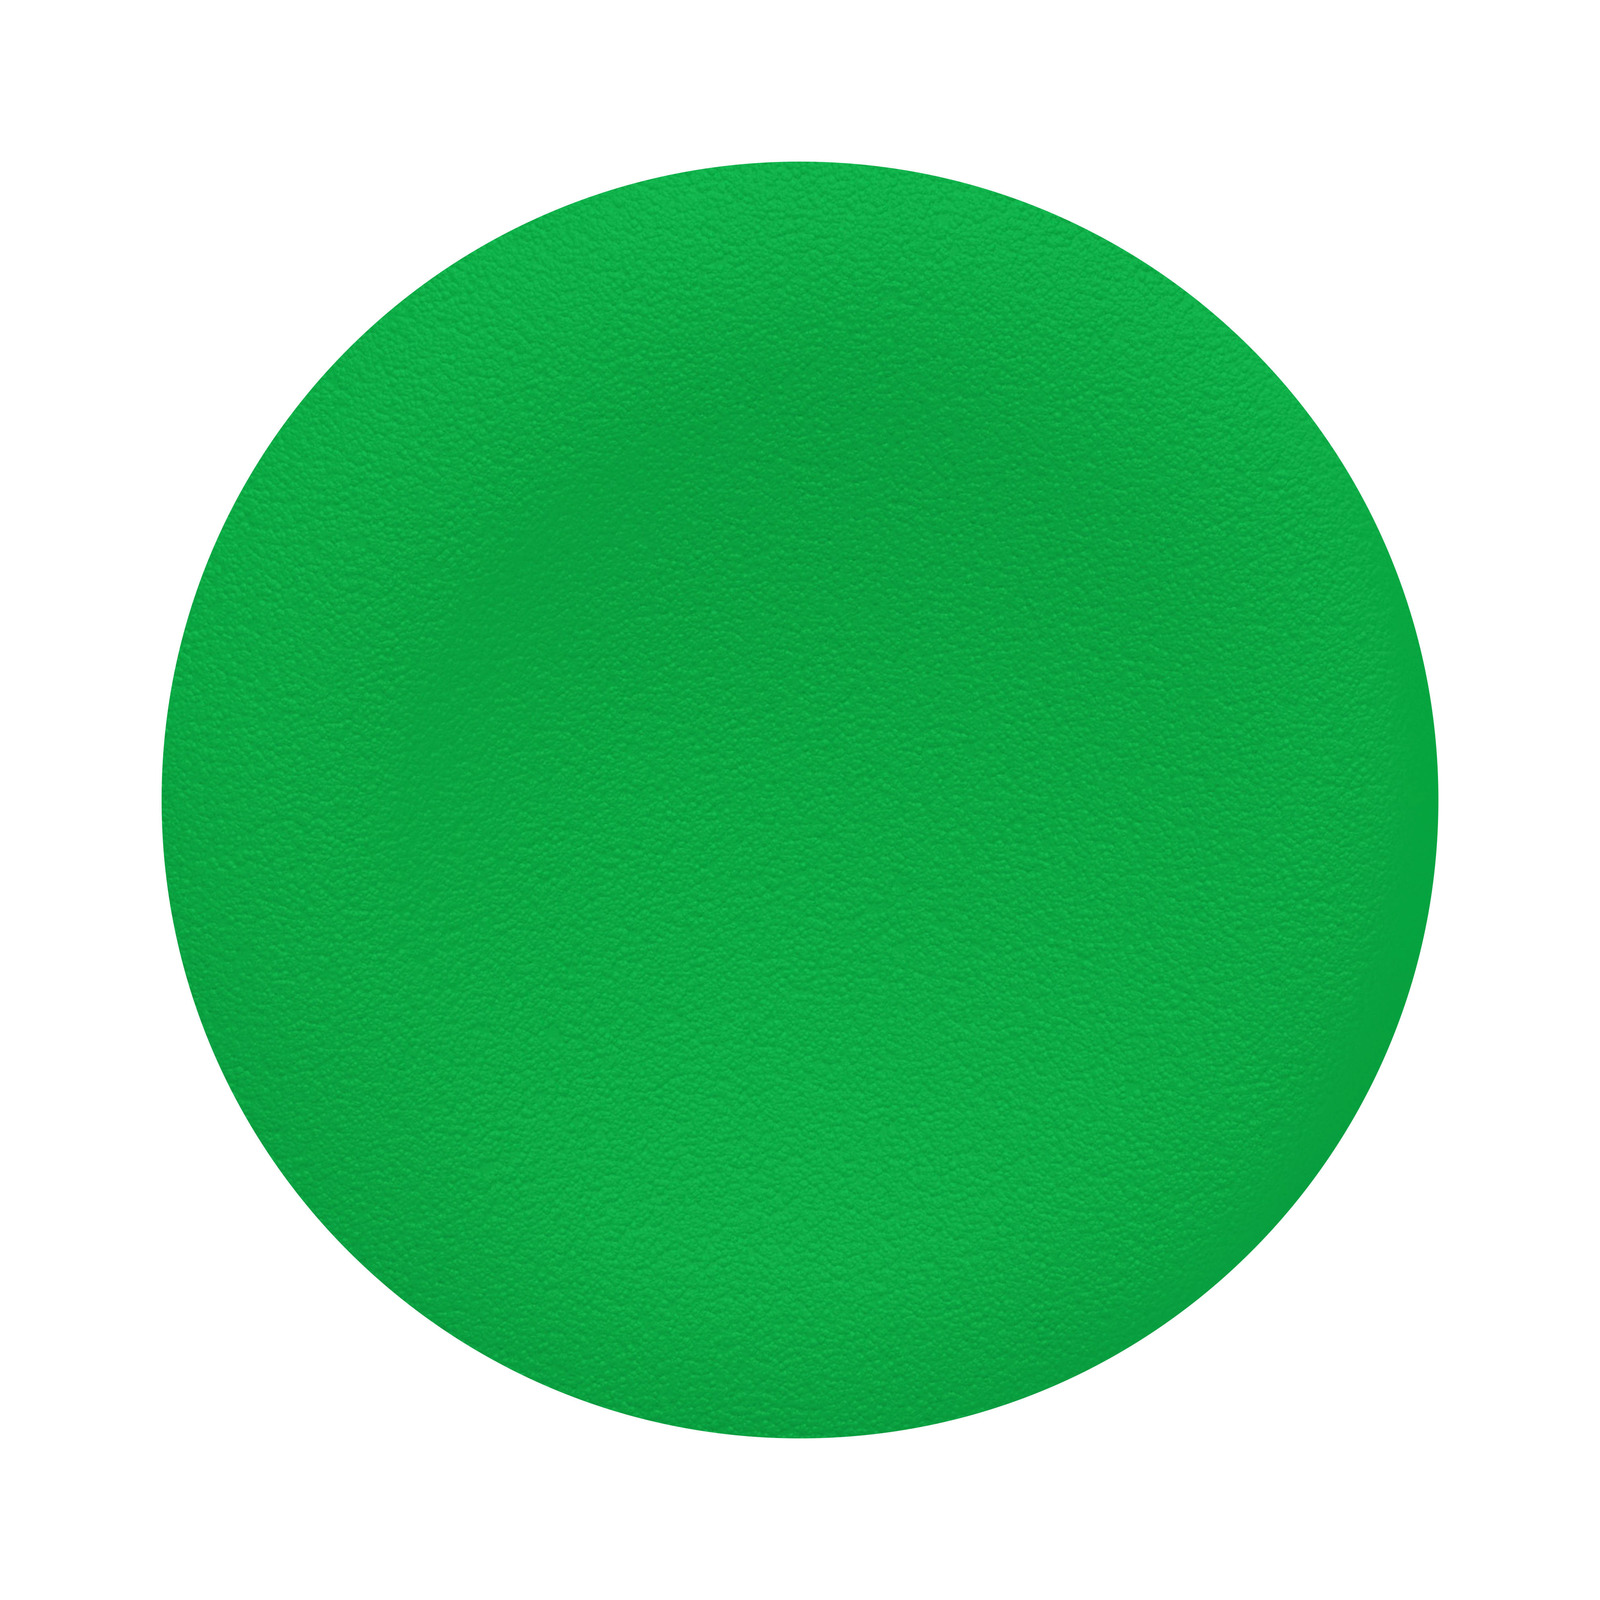 HARMONY O22 nyomógomb zöld tető jelöletlen kettős fejű készülékhez